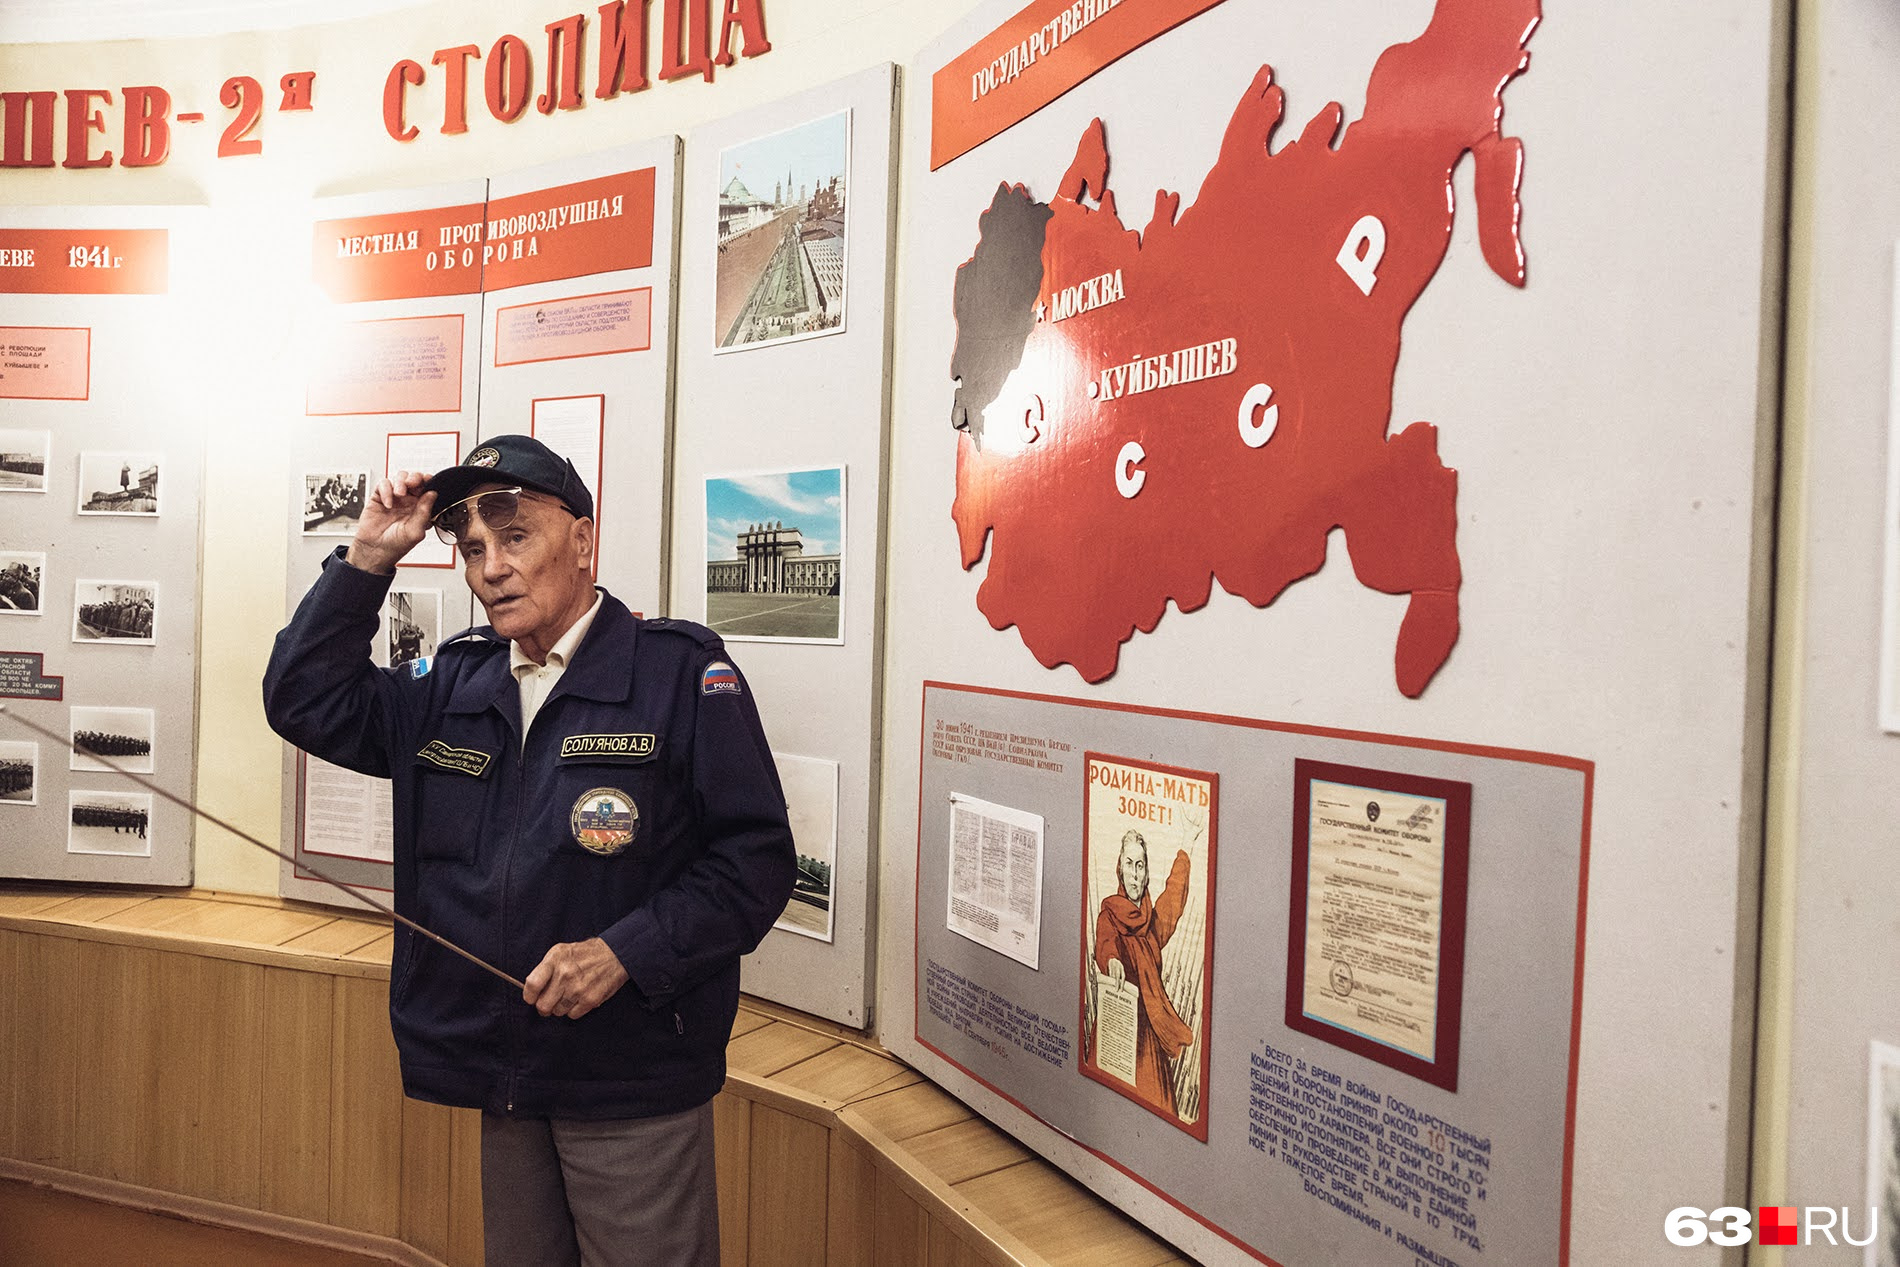 А еще в одной из комнат организовали небольшой музей, который посвящен Куйбышеву как запасной столице СССР